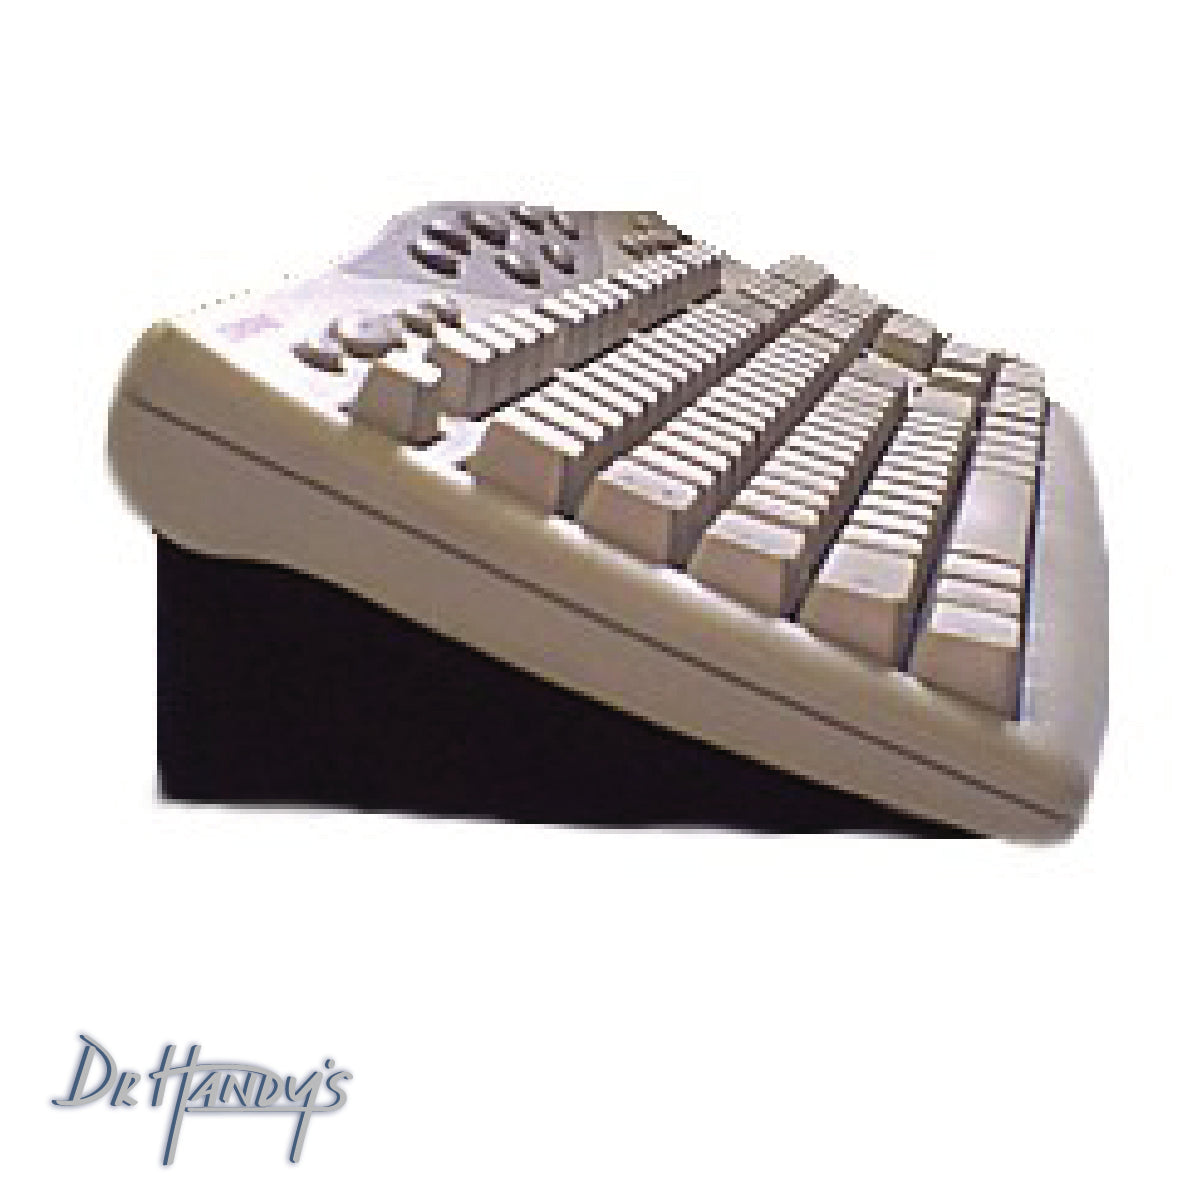 Keyboard Wedge